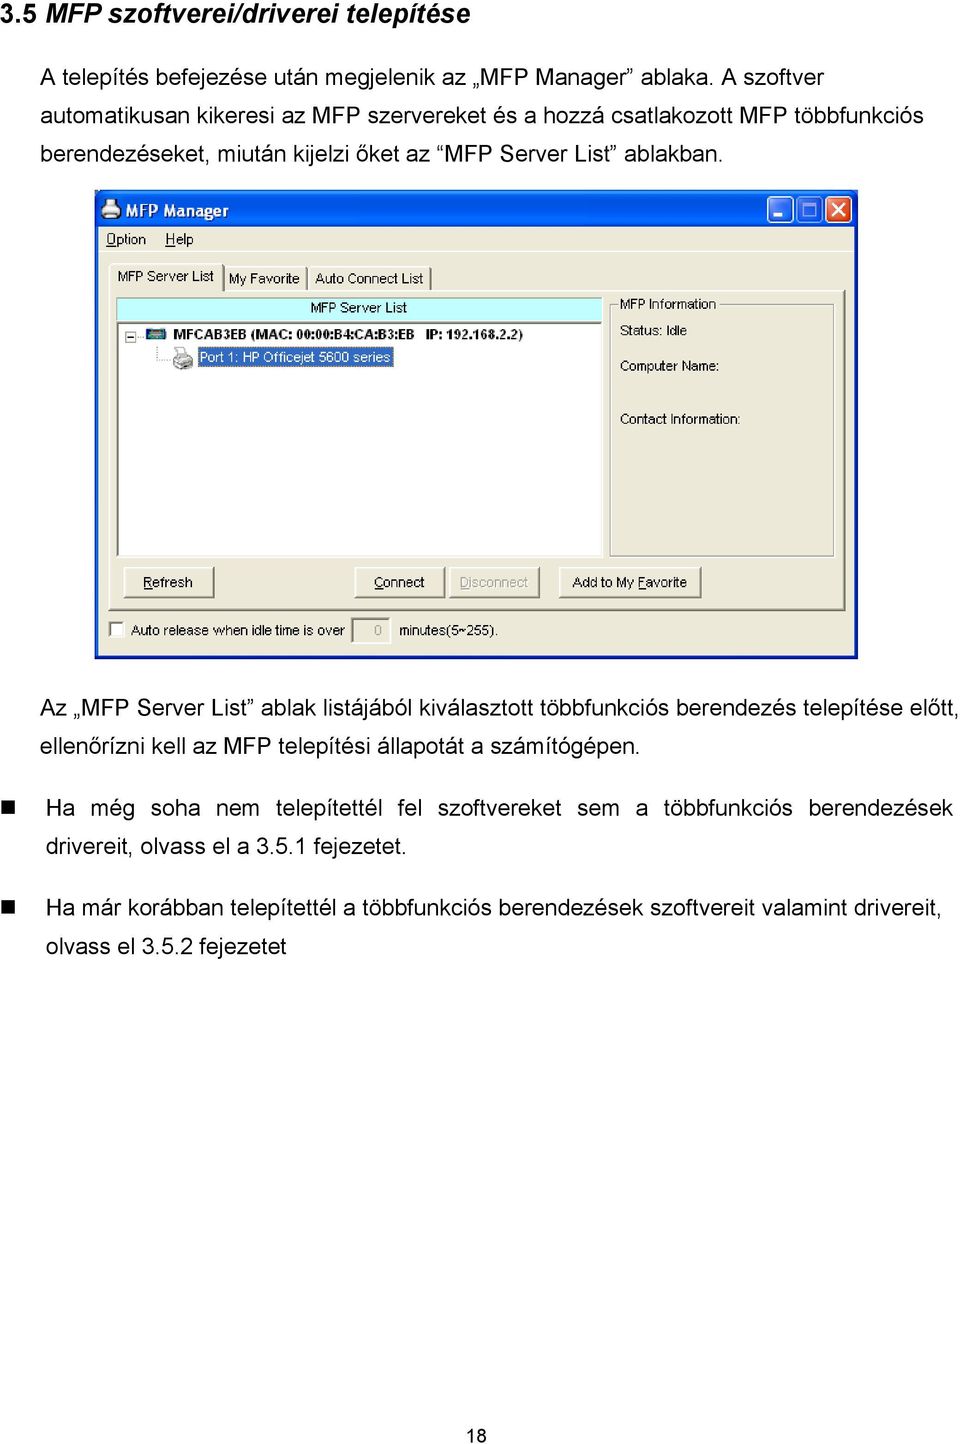 Az MFP Server List ablak listájából kiválasztott többfunkciós berendezés telepítése előtt, ellenőrízni kell az MFP telepítési állapotát a számítógépen.